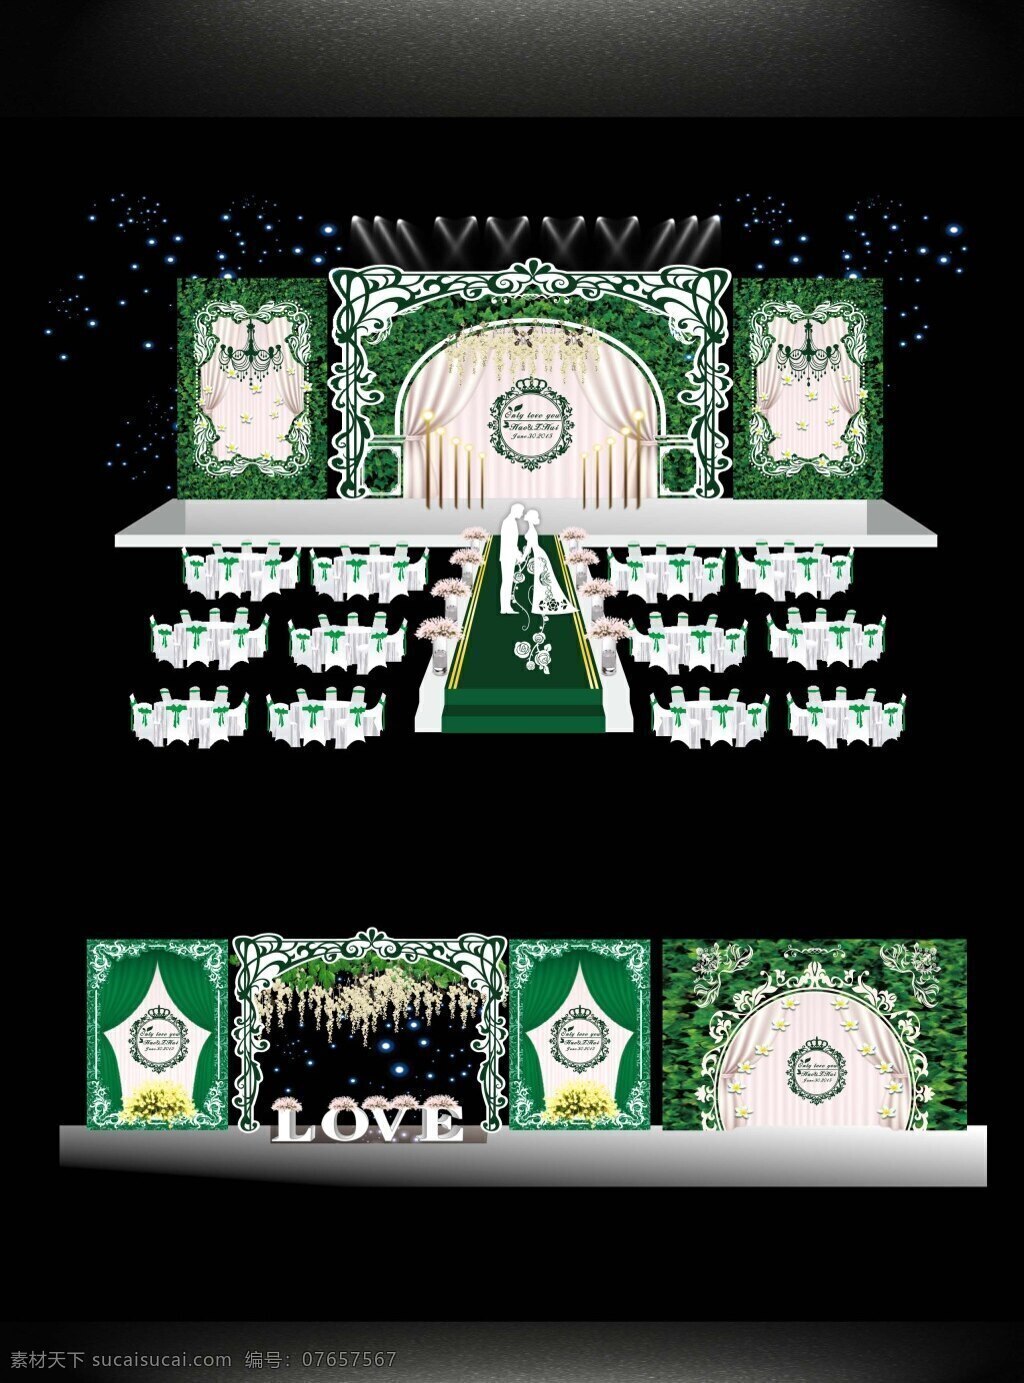 绿色 森林 主题 婚礼 婚礼布置 舞台 婚庆 迎宾区 签到区 黑色